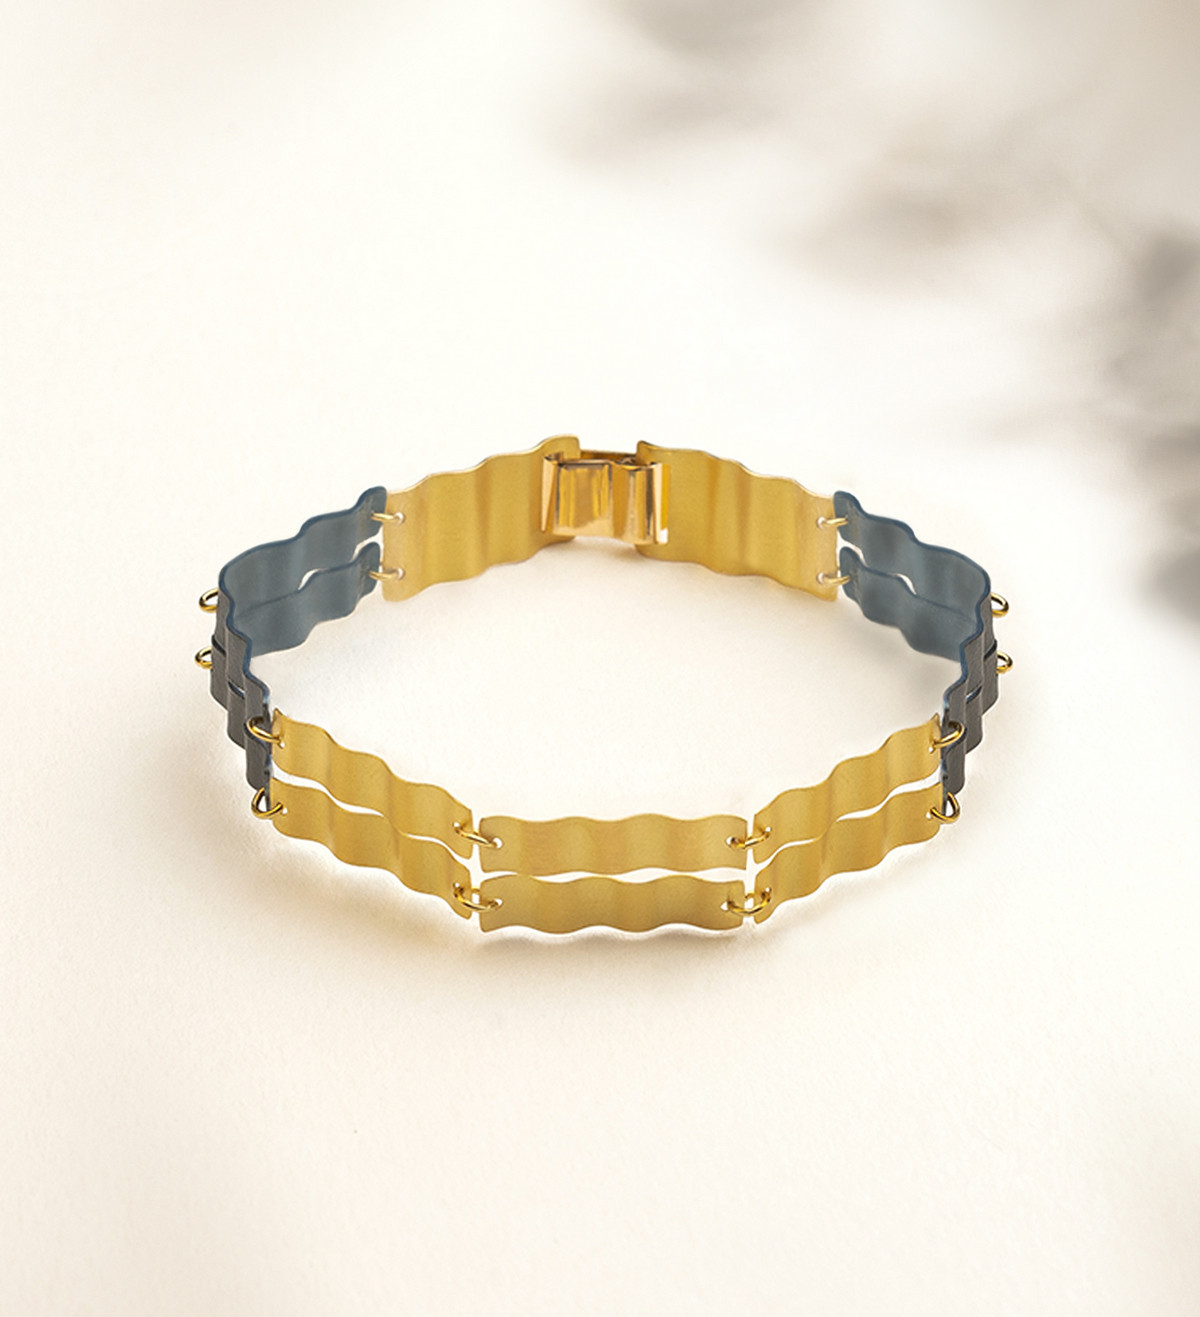 18k gold and titanium bracelet Aigua 2 bands 18cm